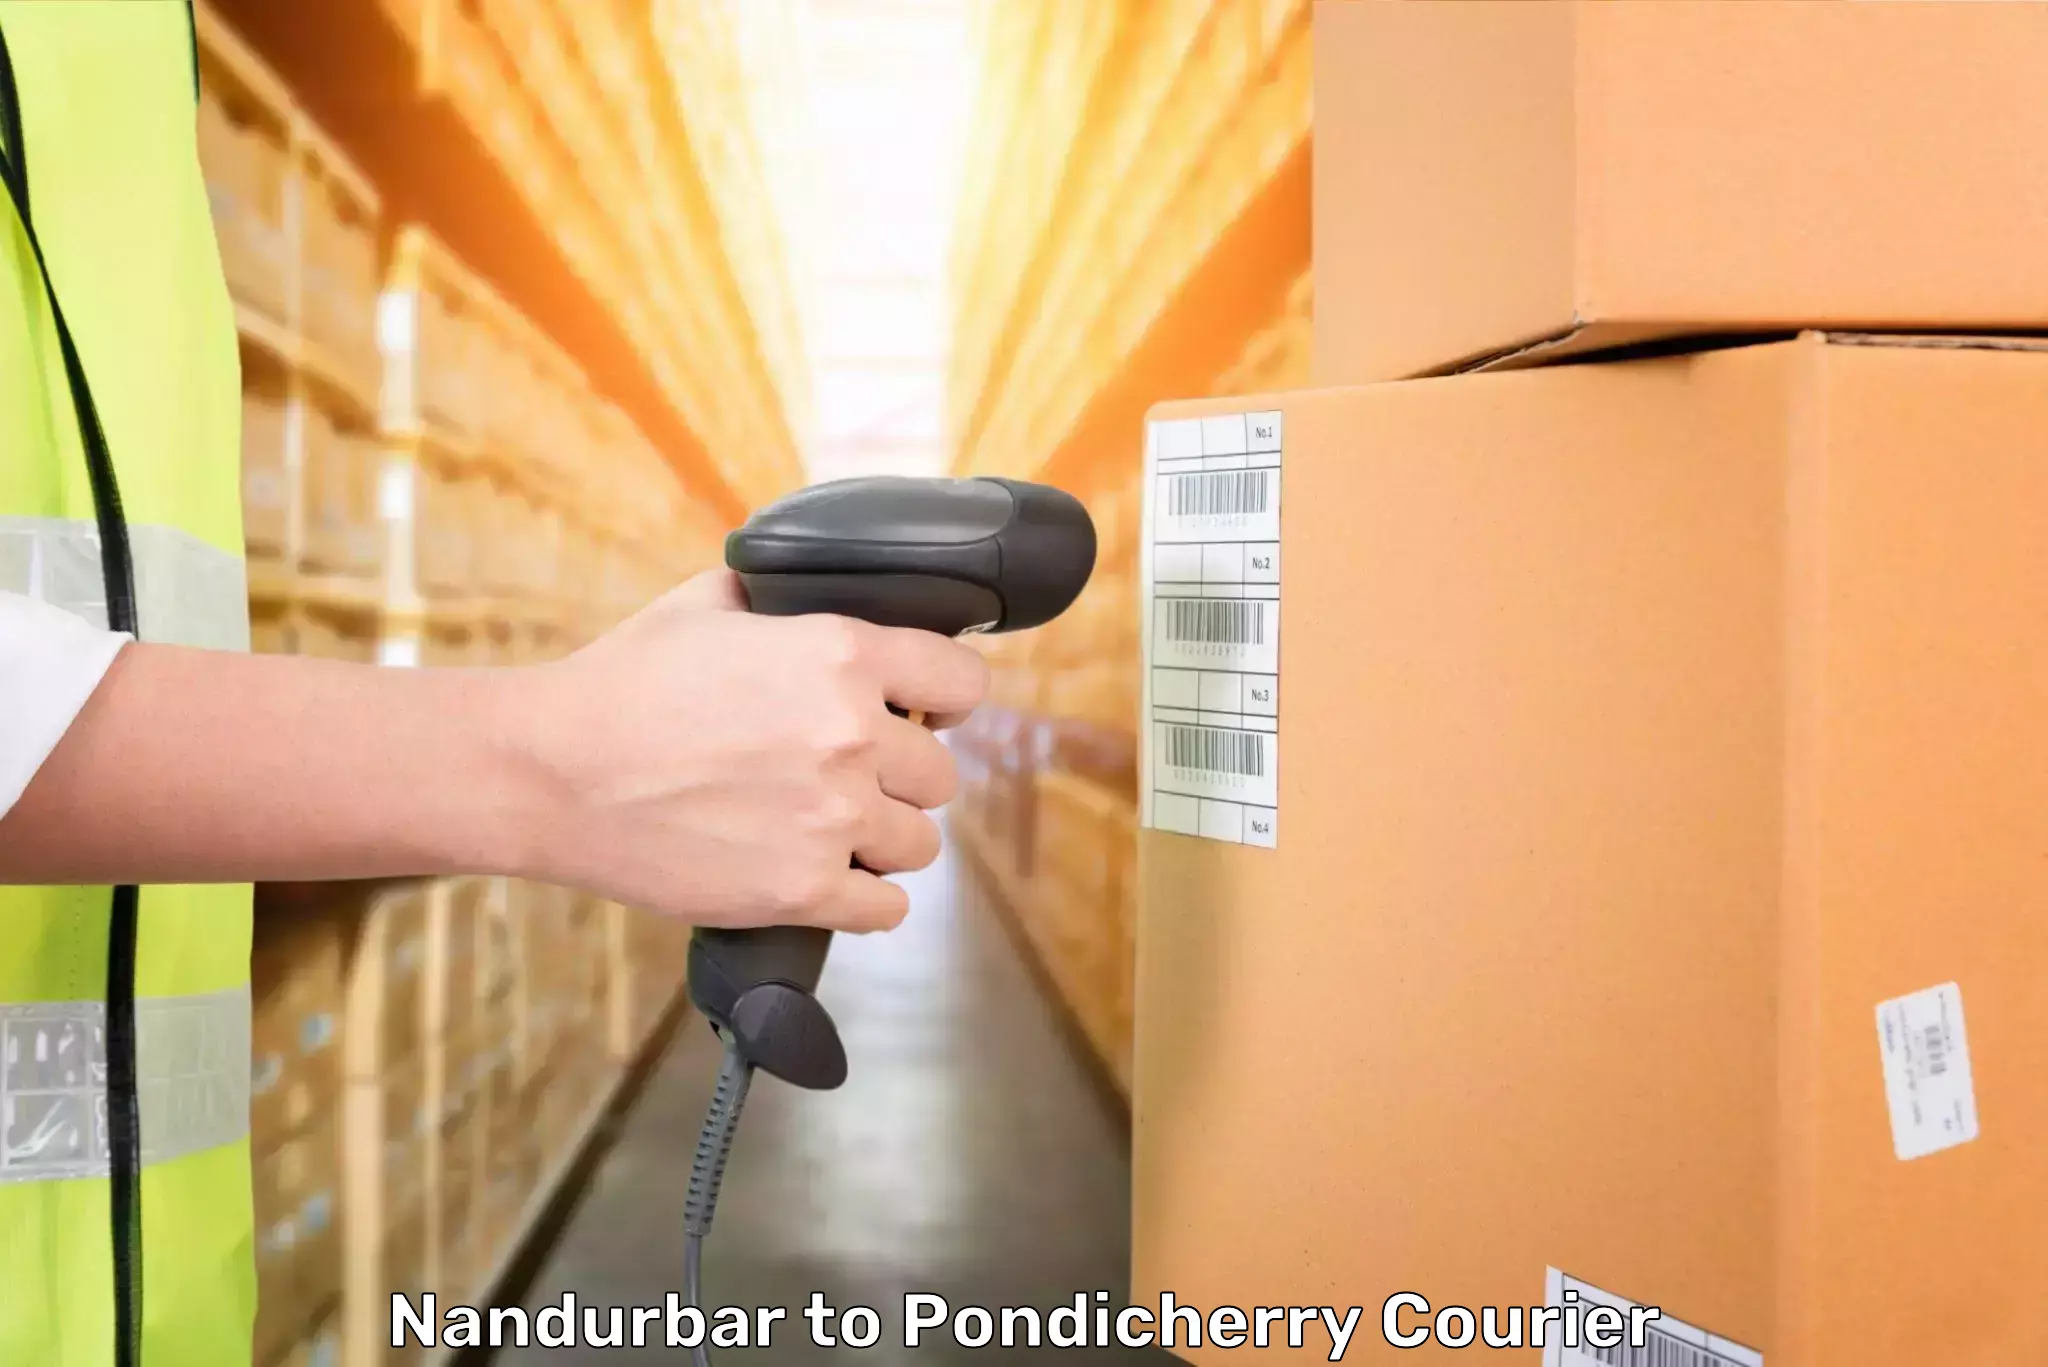 Luggage transfer service Nandurbar to Pondicherry University